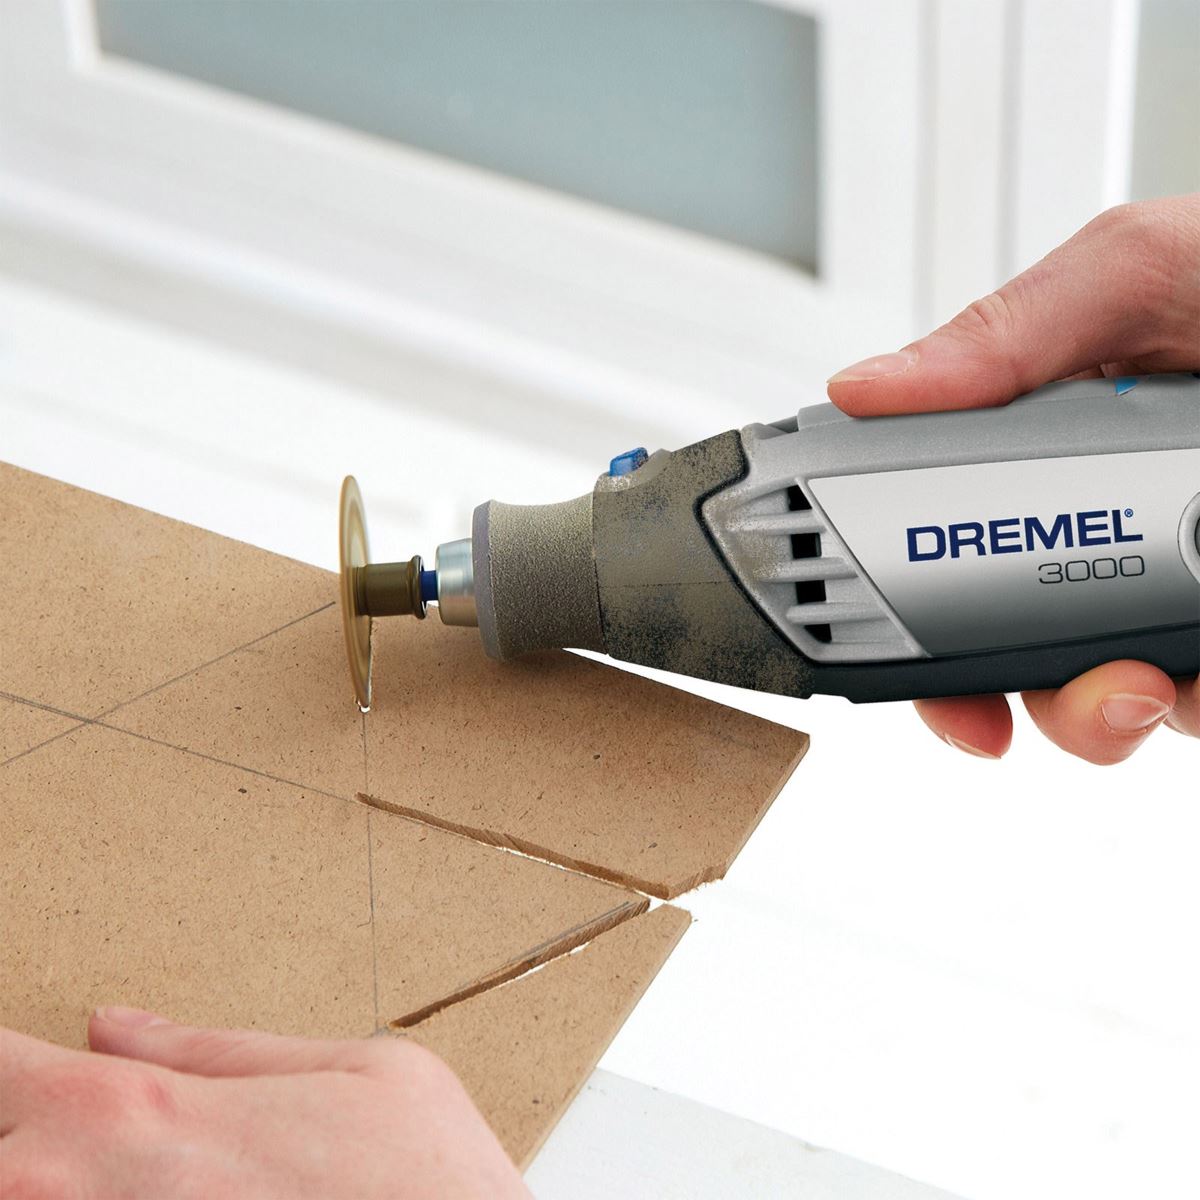 Dremel 3000 2/32 - bộ dụng cụ đa năng đáng mua giá bình dân